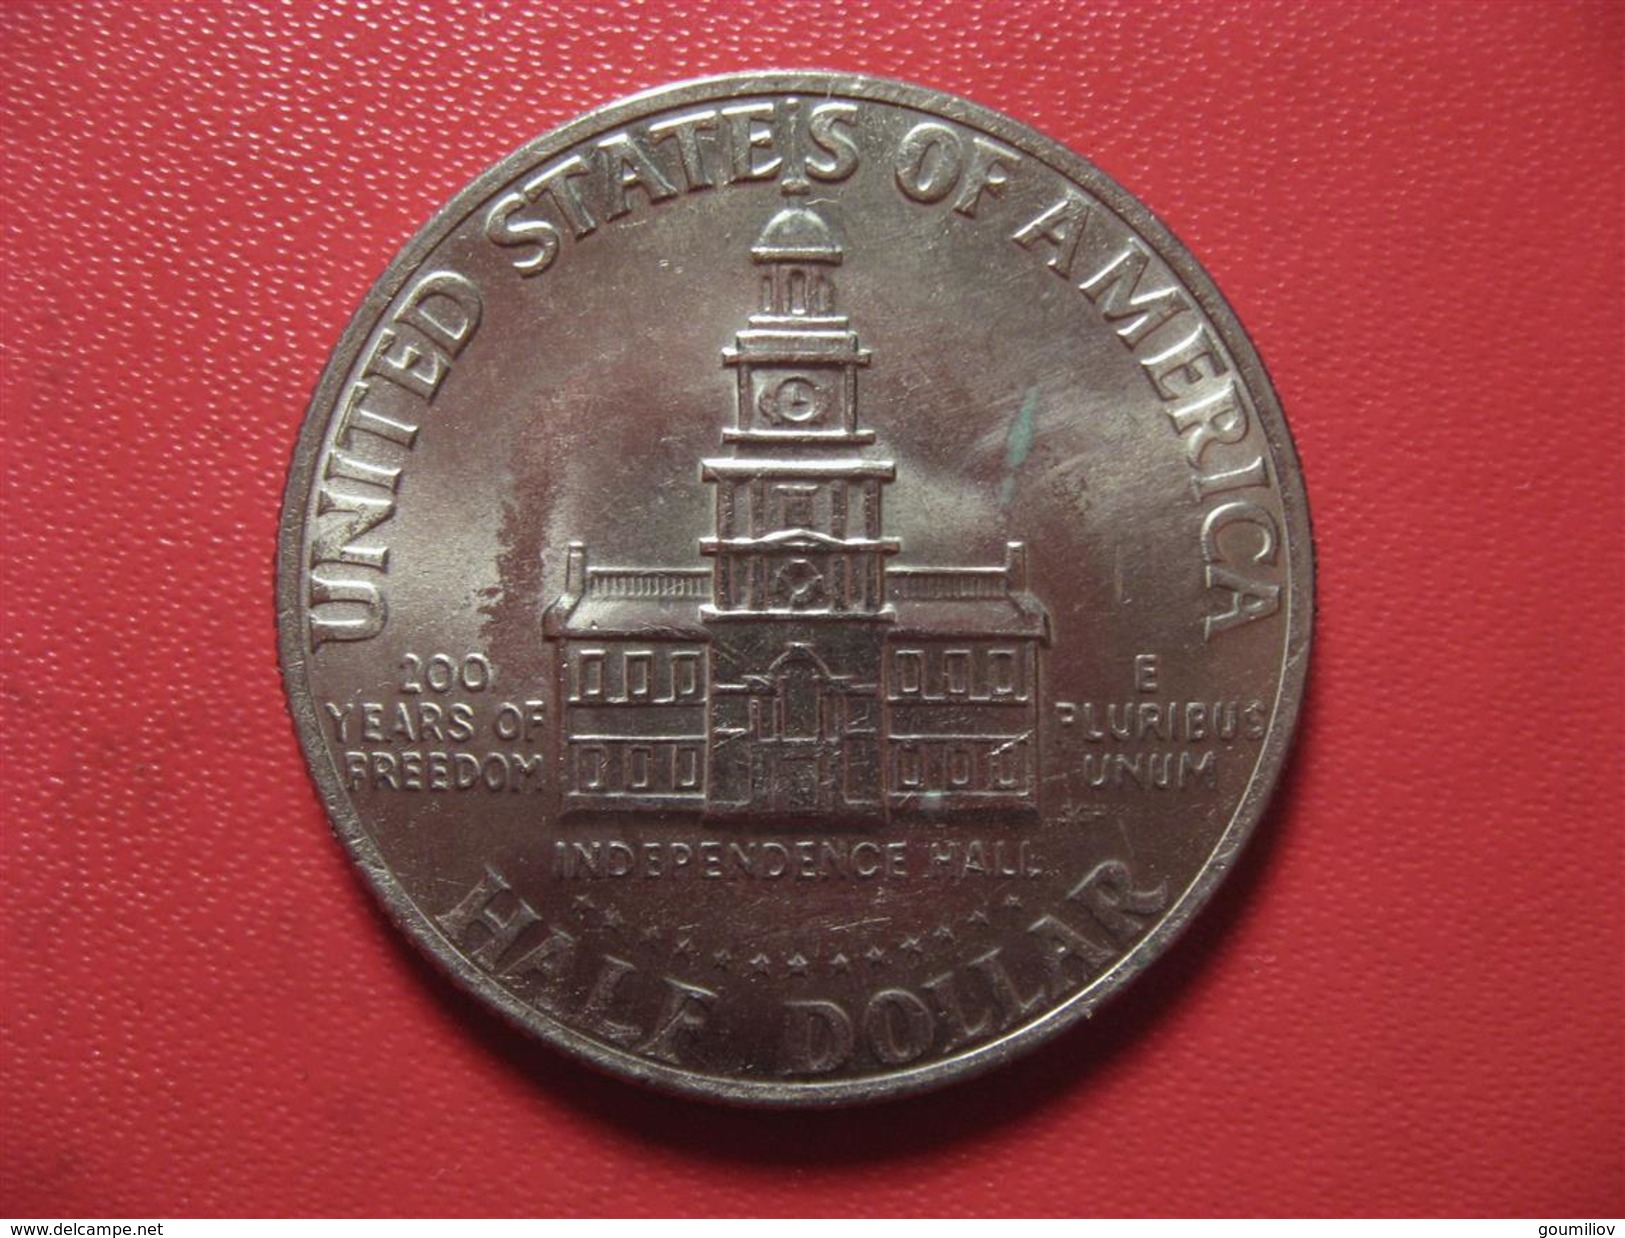 Etats-Unis - USA - Half Dollar 1776-1976 2195 - Gedenkmünzen